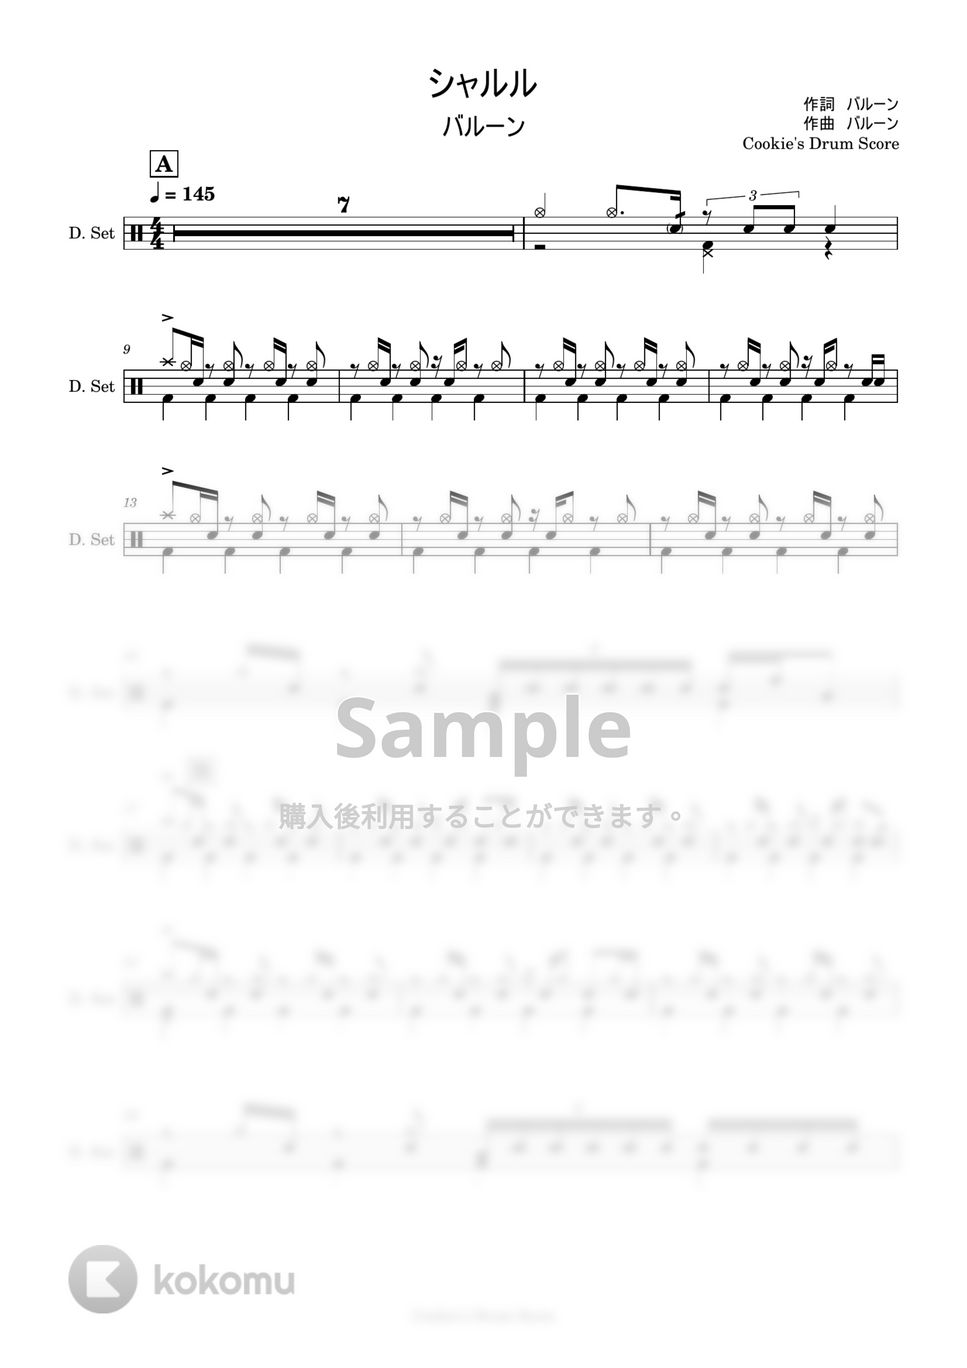 バルーン - 【ドラム楽譜】 シャルル / バルーン - Charles / Balloon 【DrumScore】 by Cookie's Drum Score